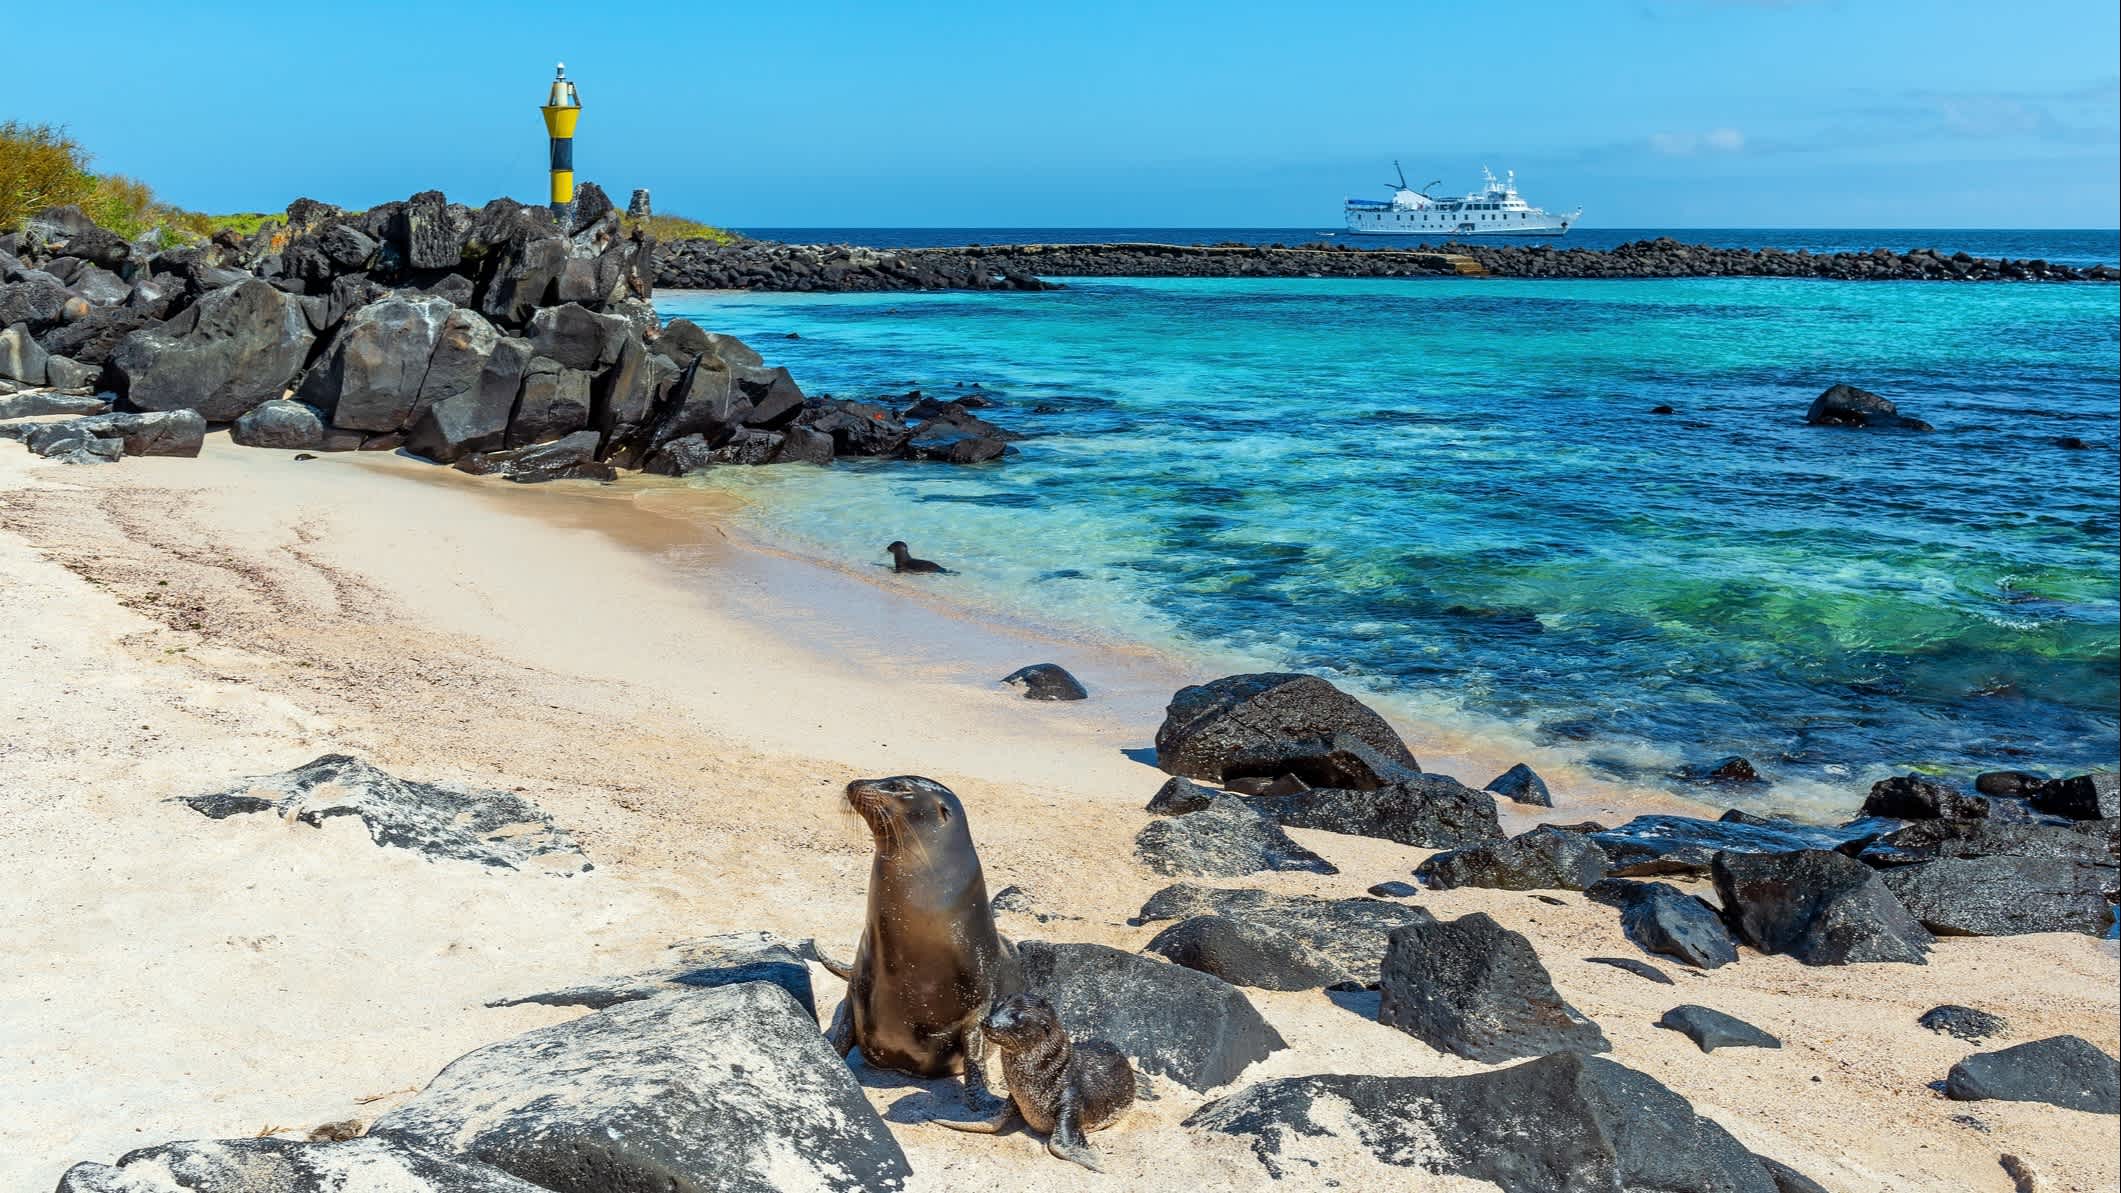 
Galapagos-Seelöwen am Strand der Insel Espanola mit Leuchtturm und Kreuzfahrtschiff, Galapagos, Ecuador.





Galapagos-Seelöwen am Strand der Insel Espanola mit Leuchtturm und Kreuzfahrtschiff, Galapagos, Ecuador.


